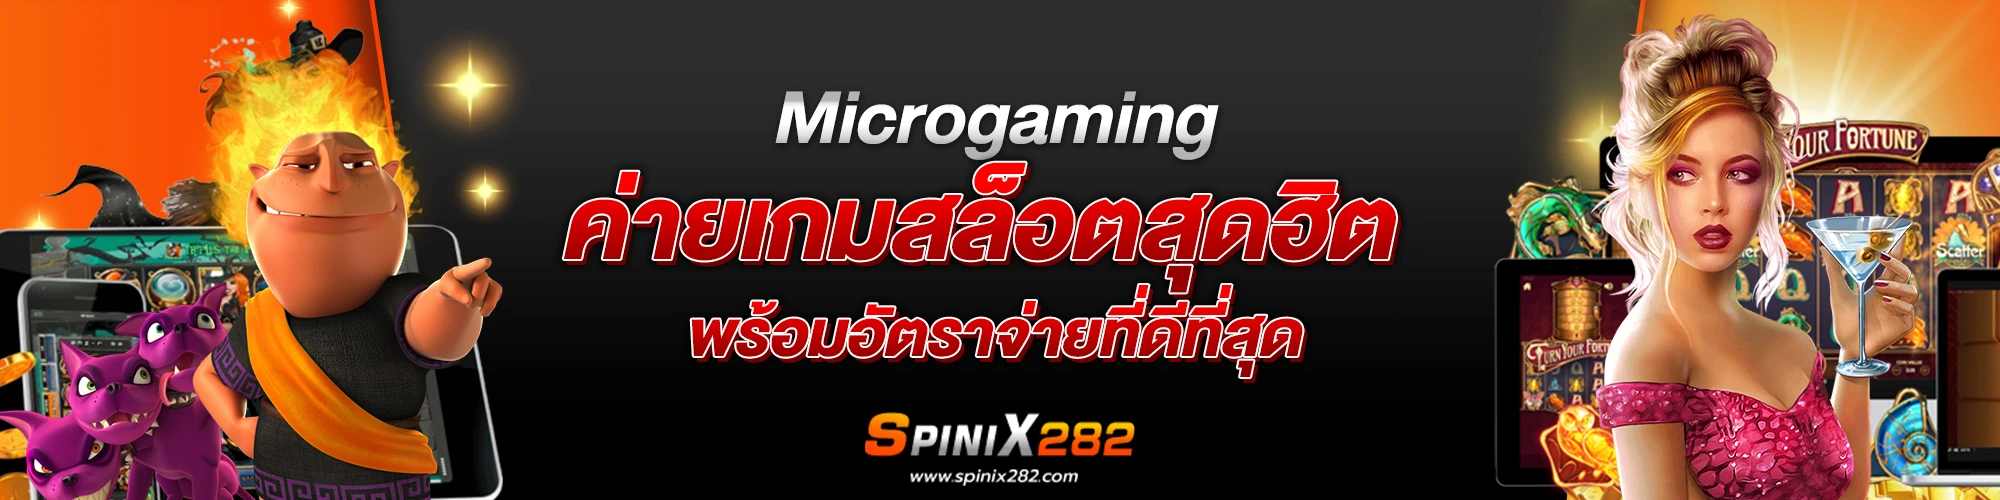 Microgaming ค่ายเกมสล็อตสุดฮิต พร้อมอัตราจ่ายที่ดีที่สุด​